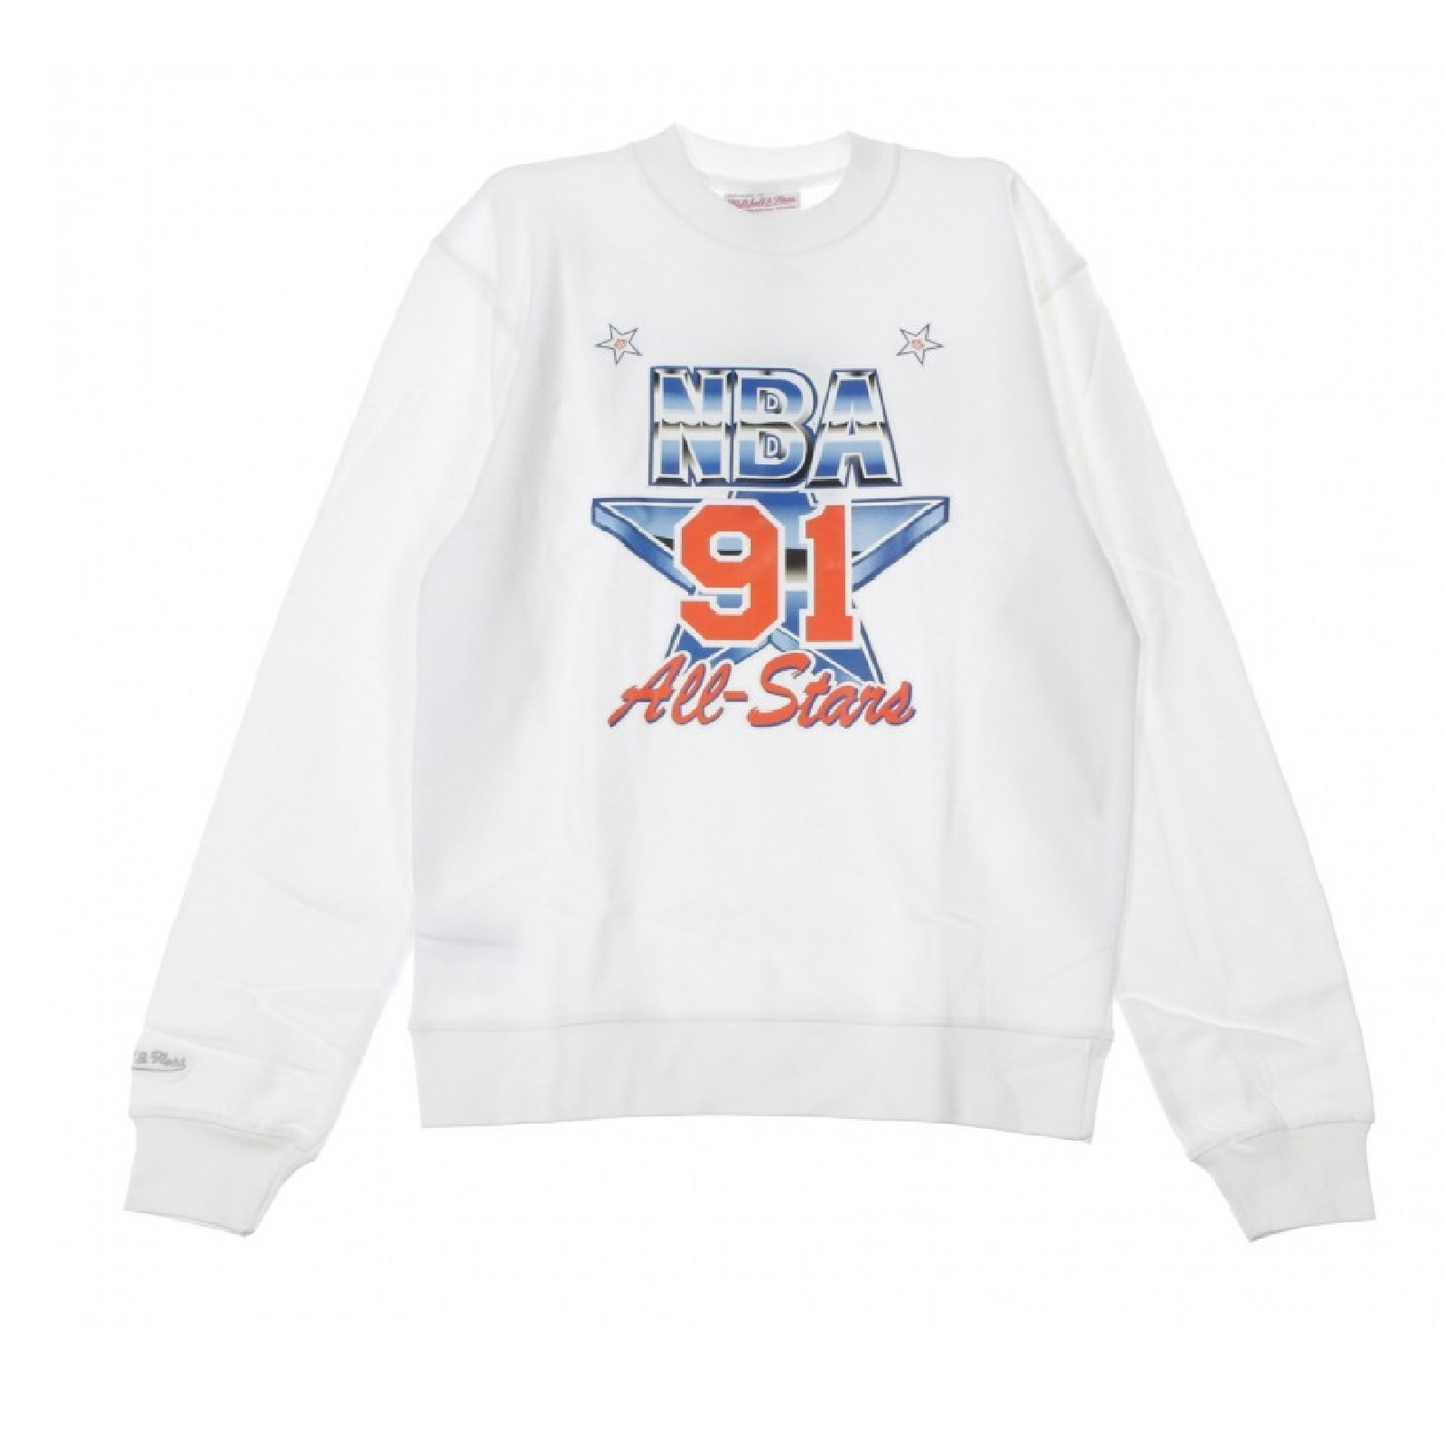 Crew Fleece Sweater Shirt All Star East 1991